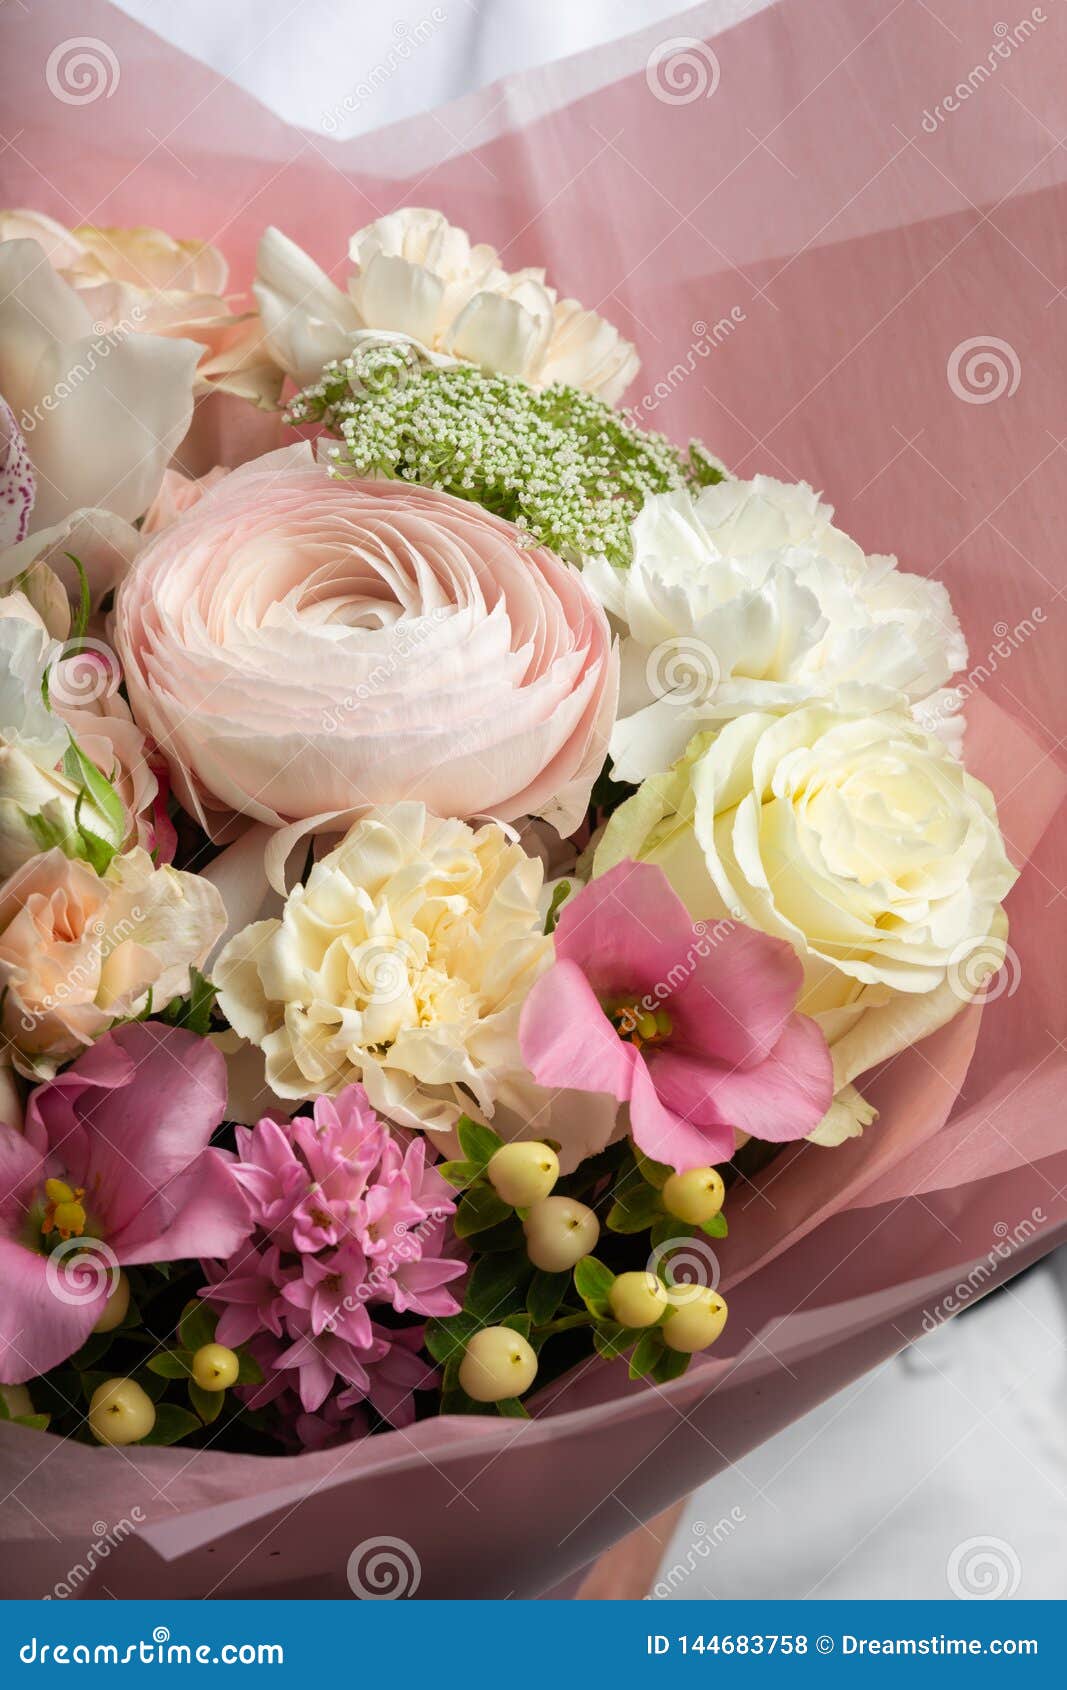 Un Grand Beau Bouquet De Propagation Des Fleurs Dans Les Mains D'une Fille,  Le Travail D'un Fleuriste Photo stock - Image du mariage, fleur: 144683758